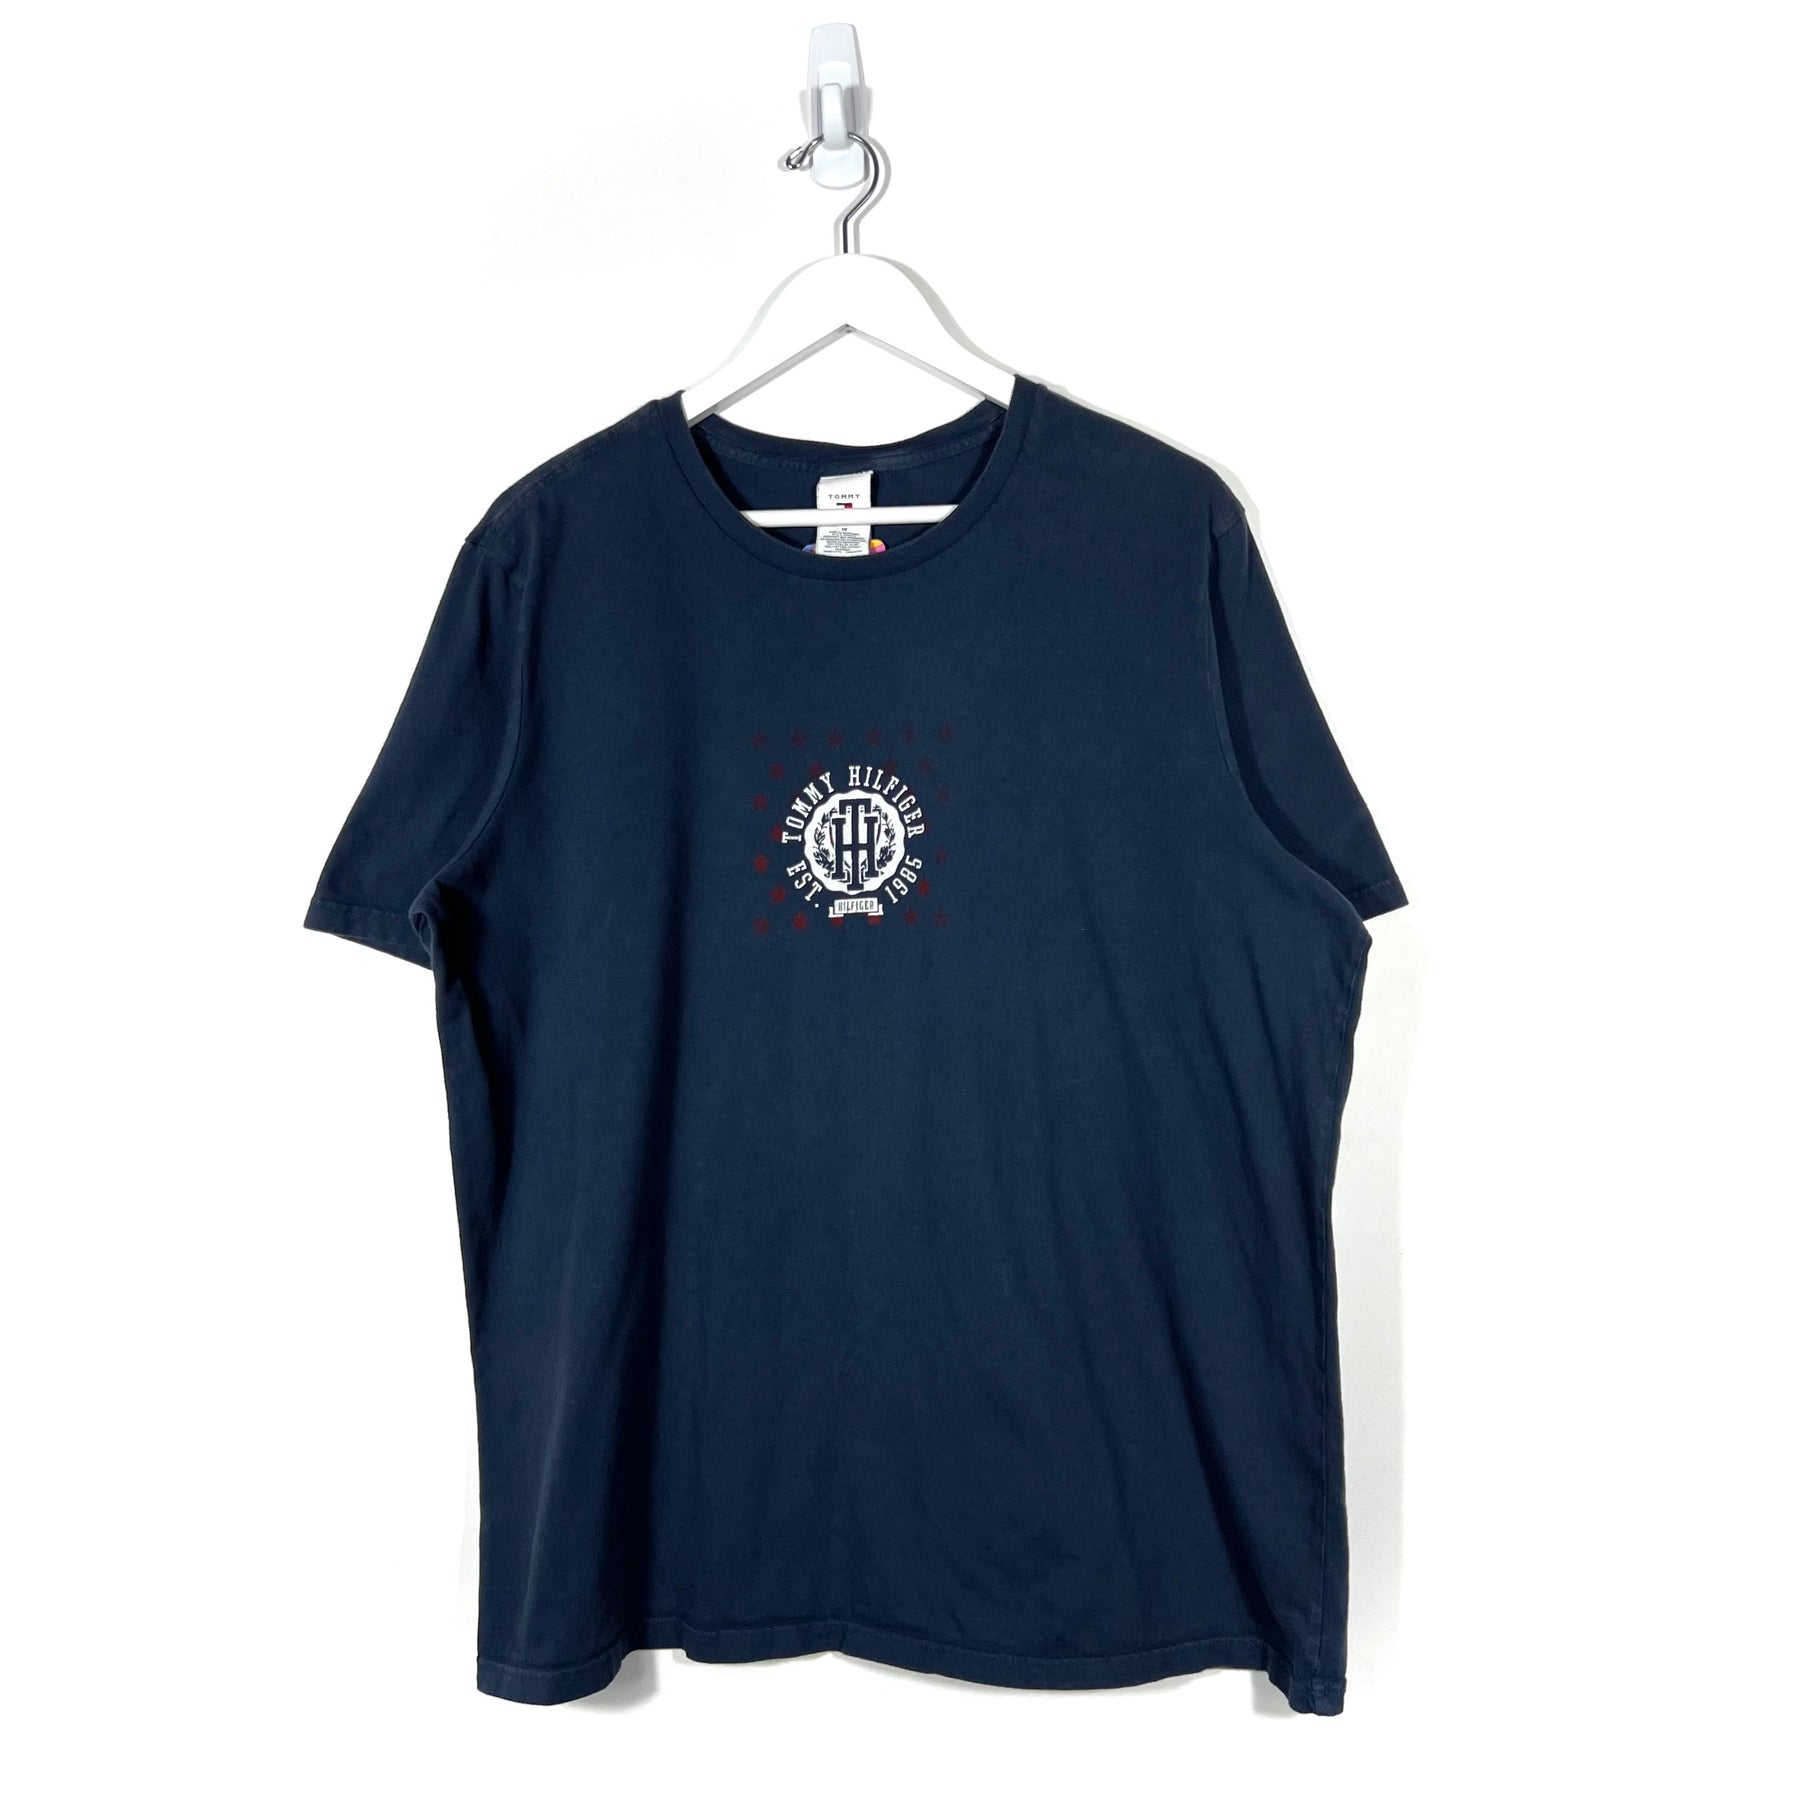 Tommy Hilfiger T-Shirt - Women's XL